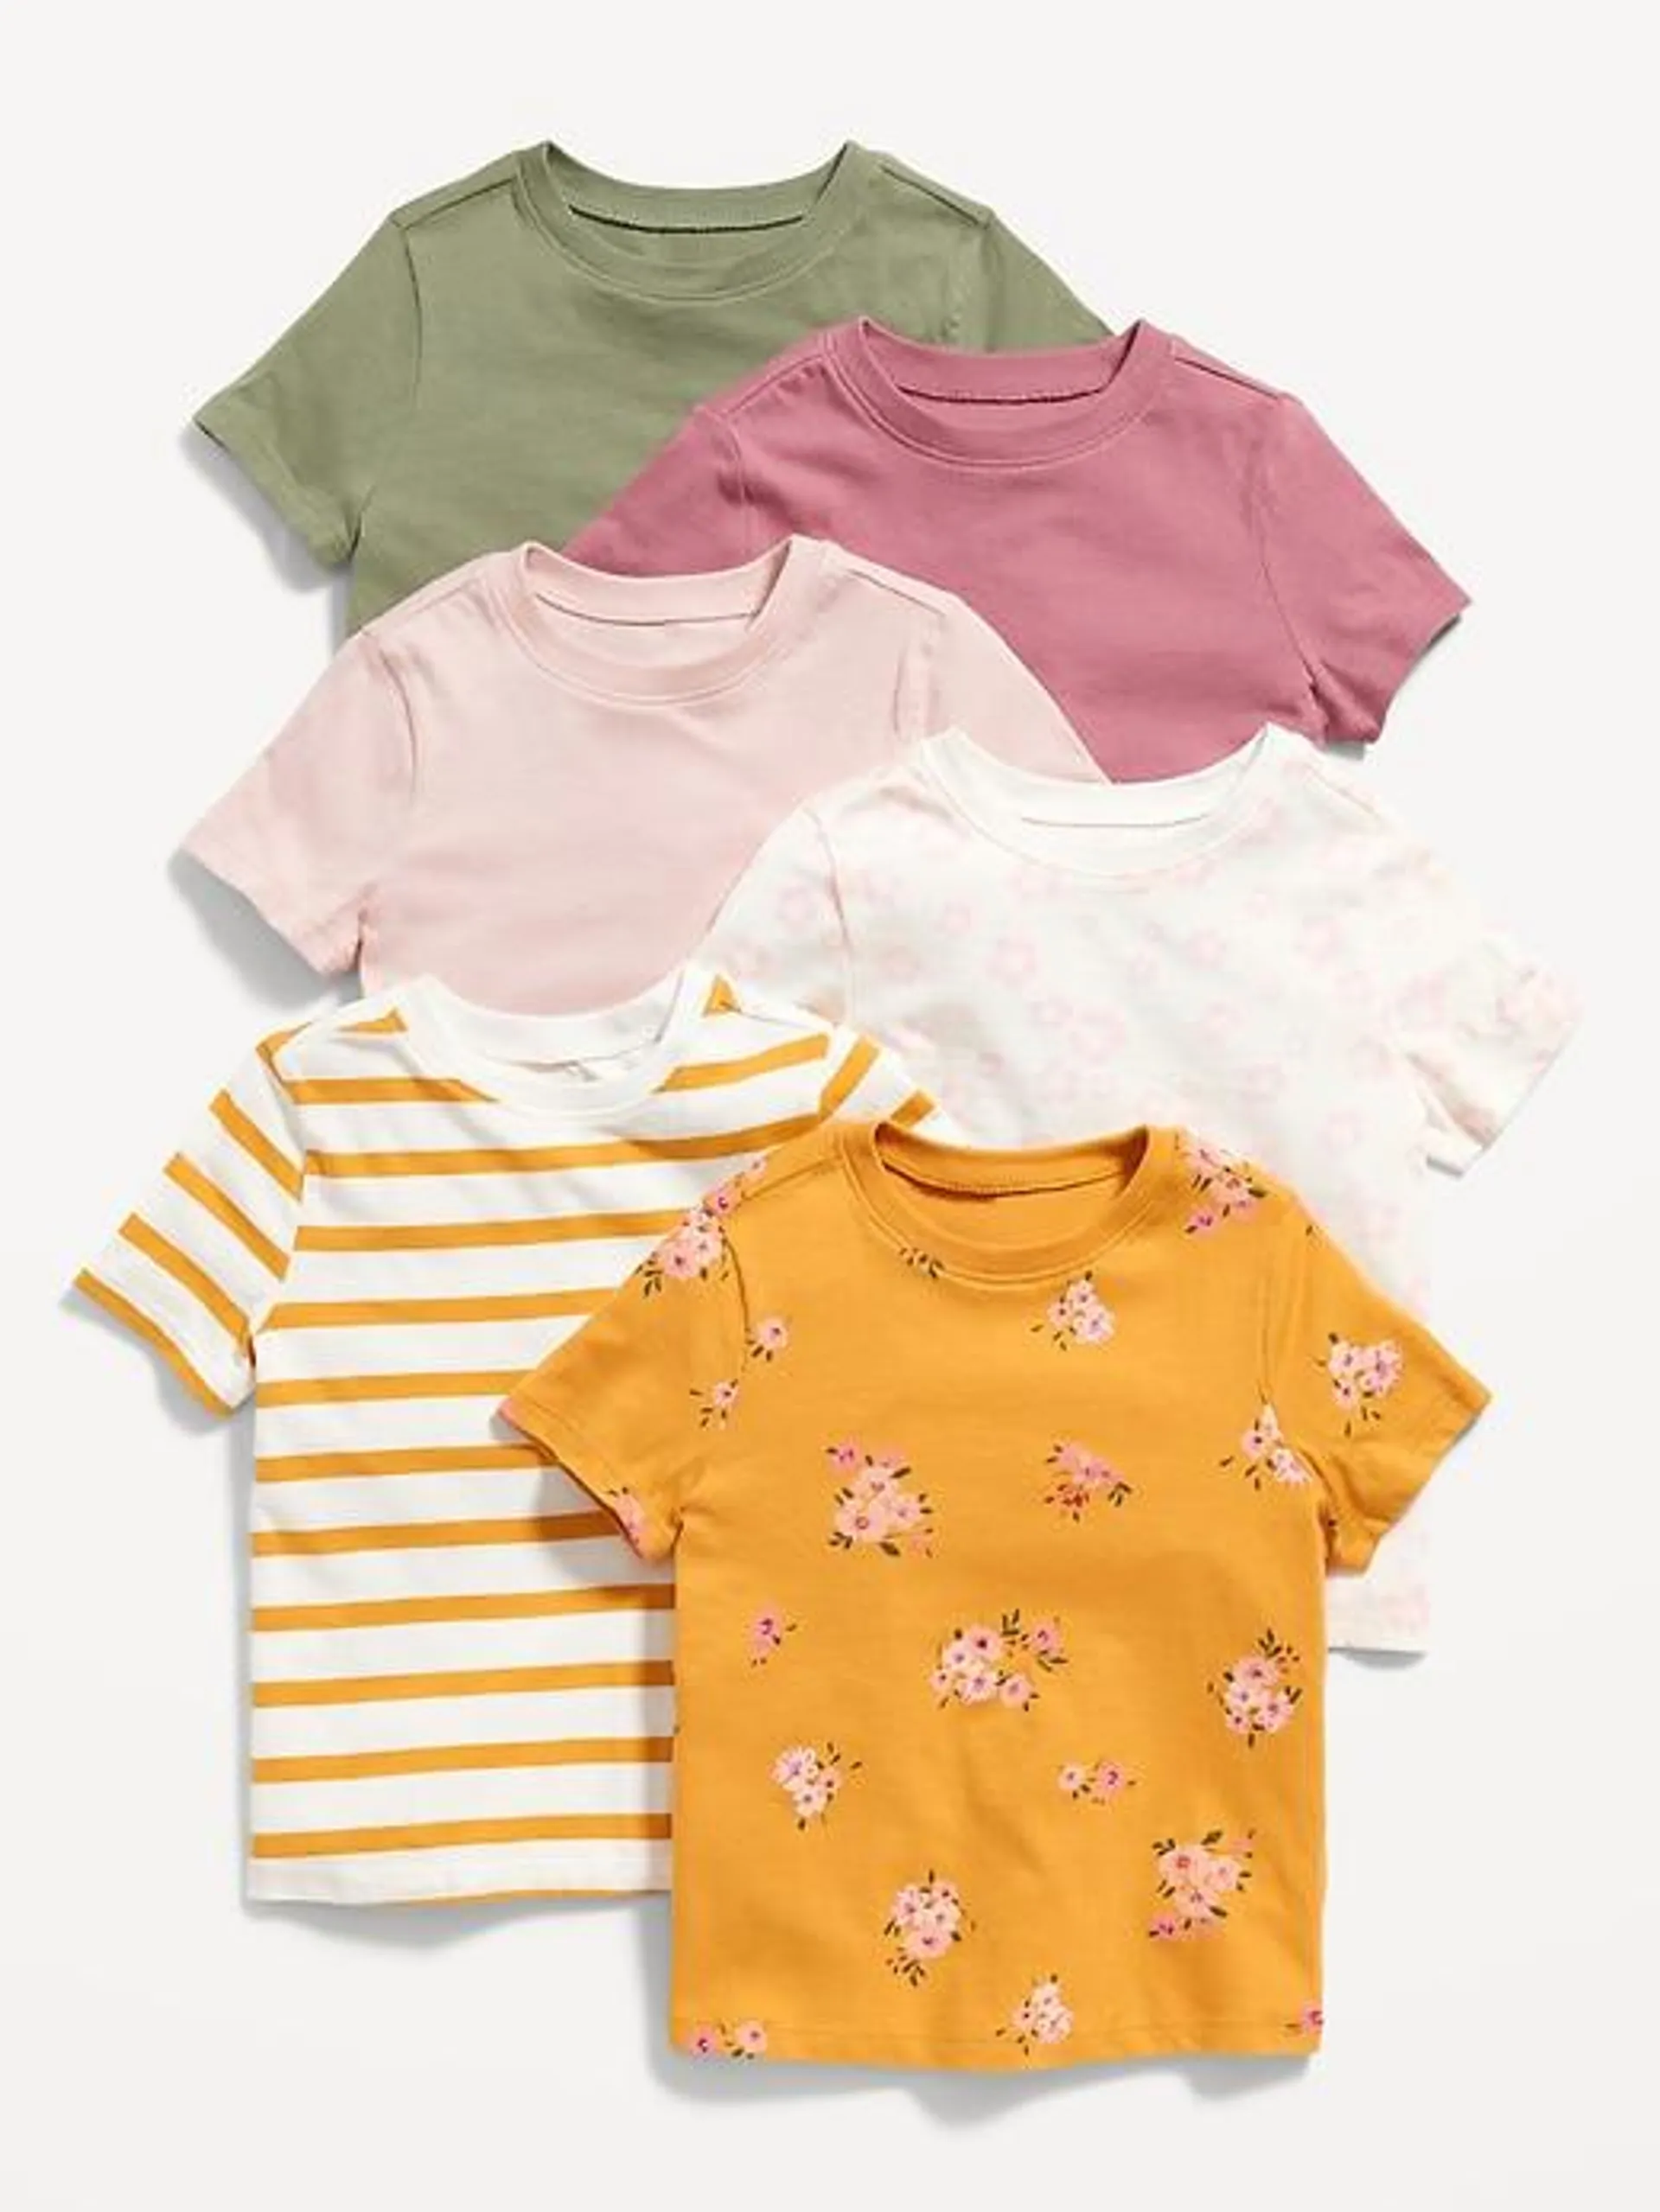 Unisex 6-Pack Short-Sleeve T-Shirt for Toddler